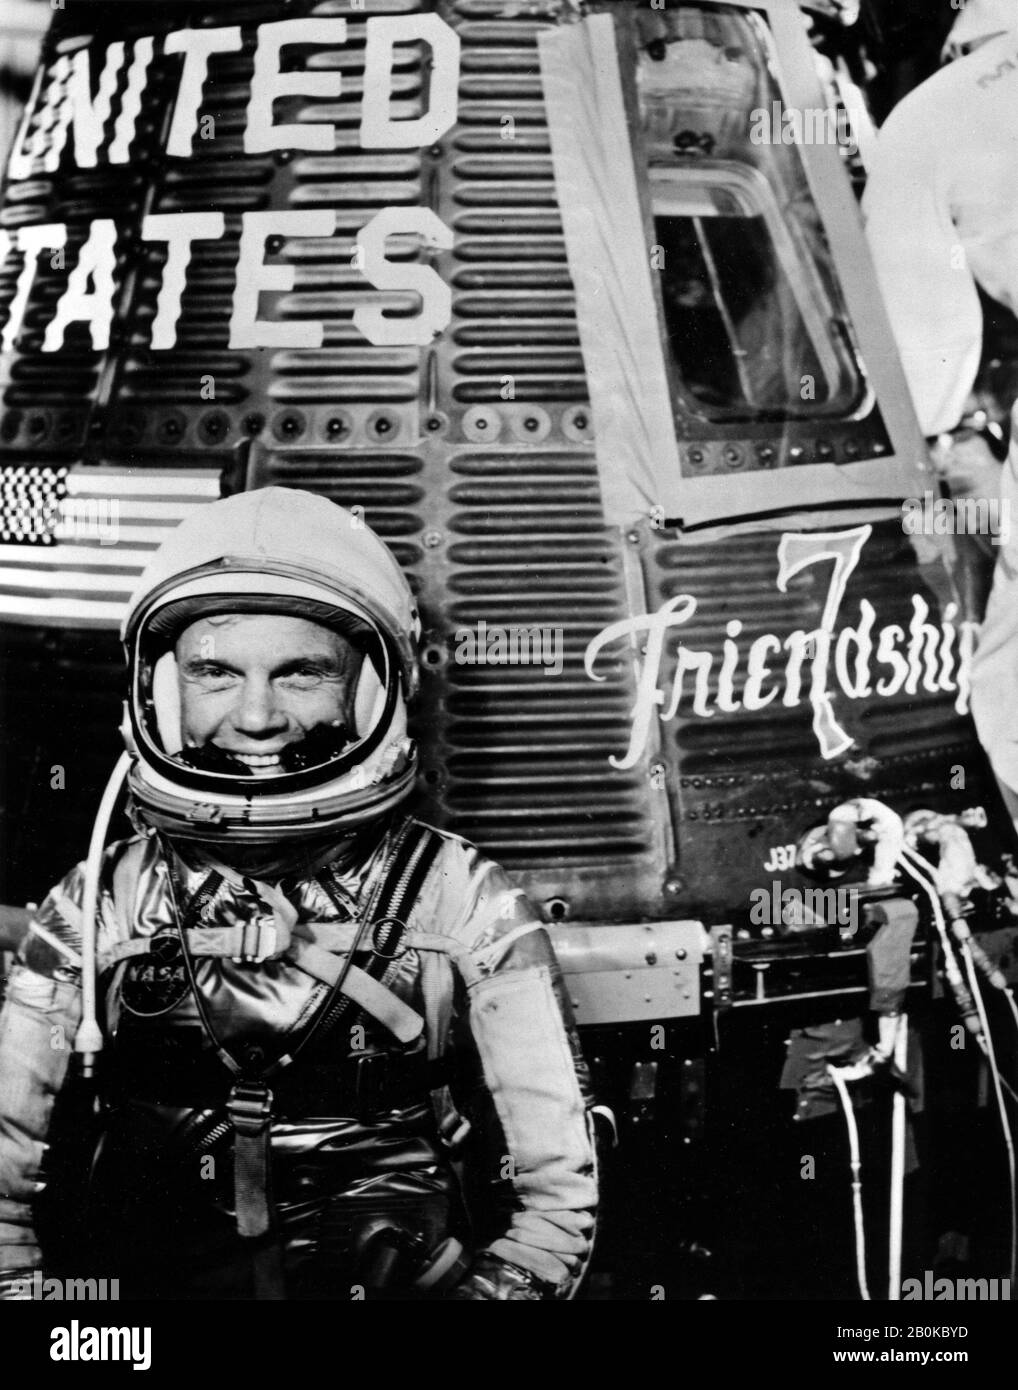 Il 20 febbraio 1962, la NASA lanciò uno dei voli più importanti della storia americana. La missione? Manda un uomo ad orbita attorno alla Terra, osserva le sue reazioni e lo riporta a casa in modo sicuro. Il pilota di questo volo storico, John Glenn, divenne un eroe nazionale e un simbolo di ambizione americana. In 4 ore e 56 minuti, John Glenn ha cerchiato il globo tre volte, raggiungendo velocità di oltre 17.000 miglia all'ora. La missione di successo si è conclusa con uno smashdown e recupero nell'Oceano Atlantico, a 800 miglia a sud-est delle Bermuda. NASA/UPI Foto Stock